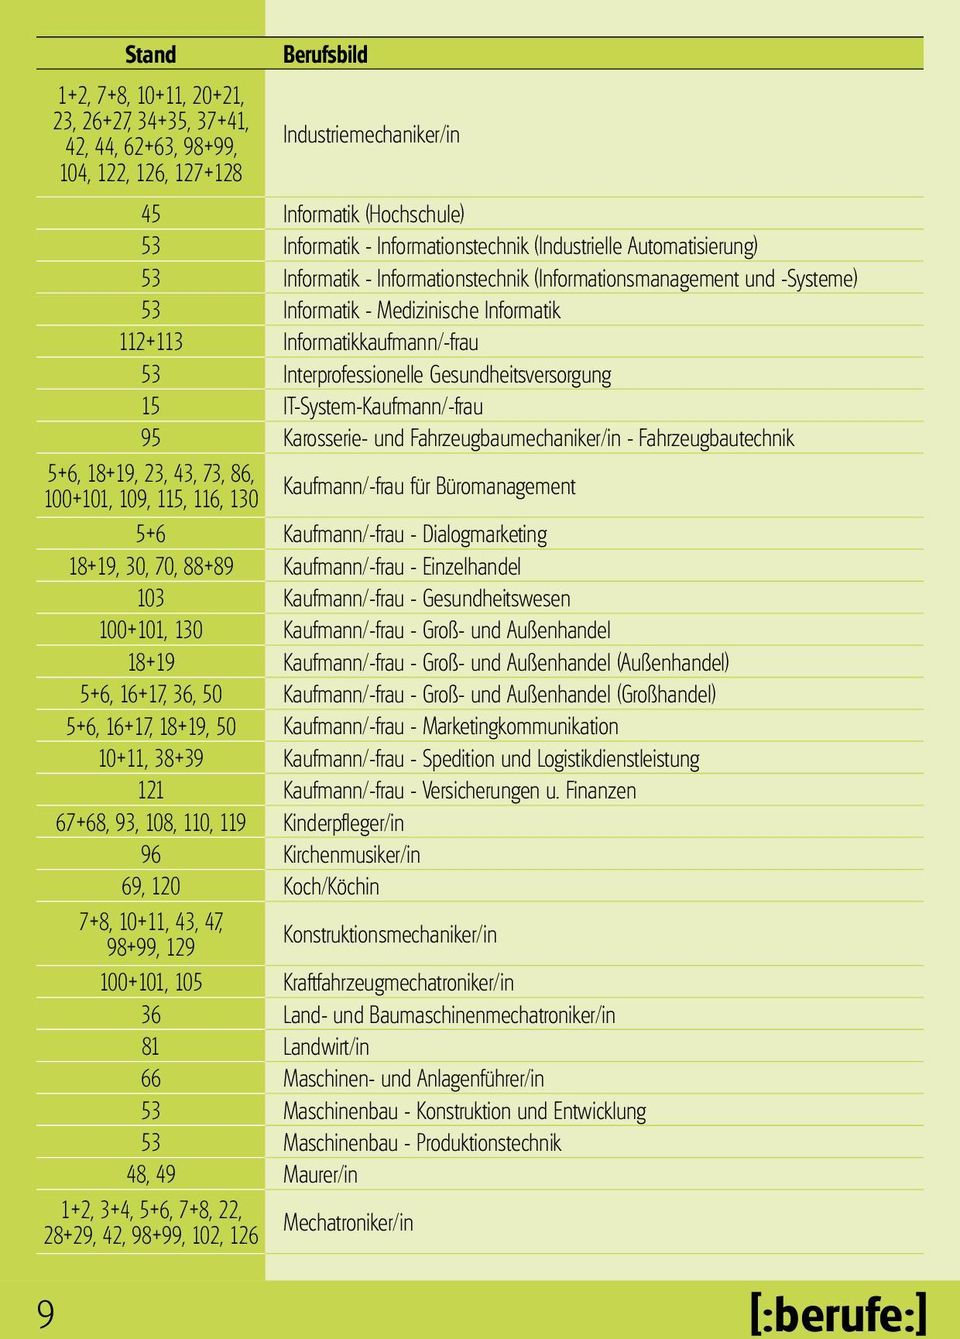 Interprofessionelle Gesundheitsversorgung 15 IT-System-Kaufmann/-frau 95 Karosserie- und Fahrzeugbaumechaniker/in - Fahrzeugbautechnik 5+6, 18+19, 23, 43, 73, 86, 100+101, 109, 115, 116, 130